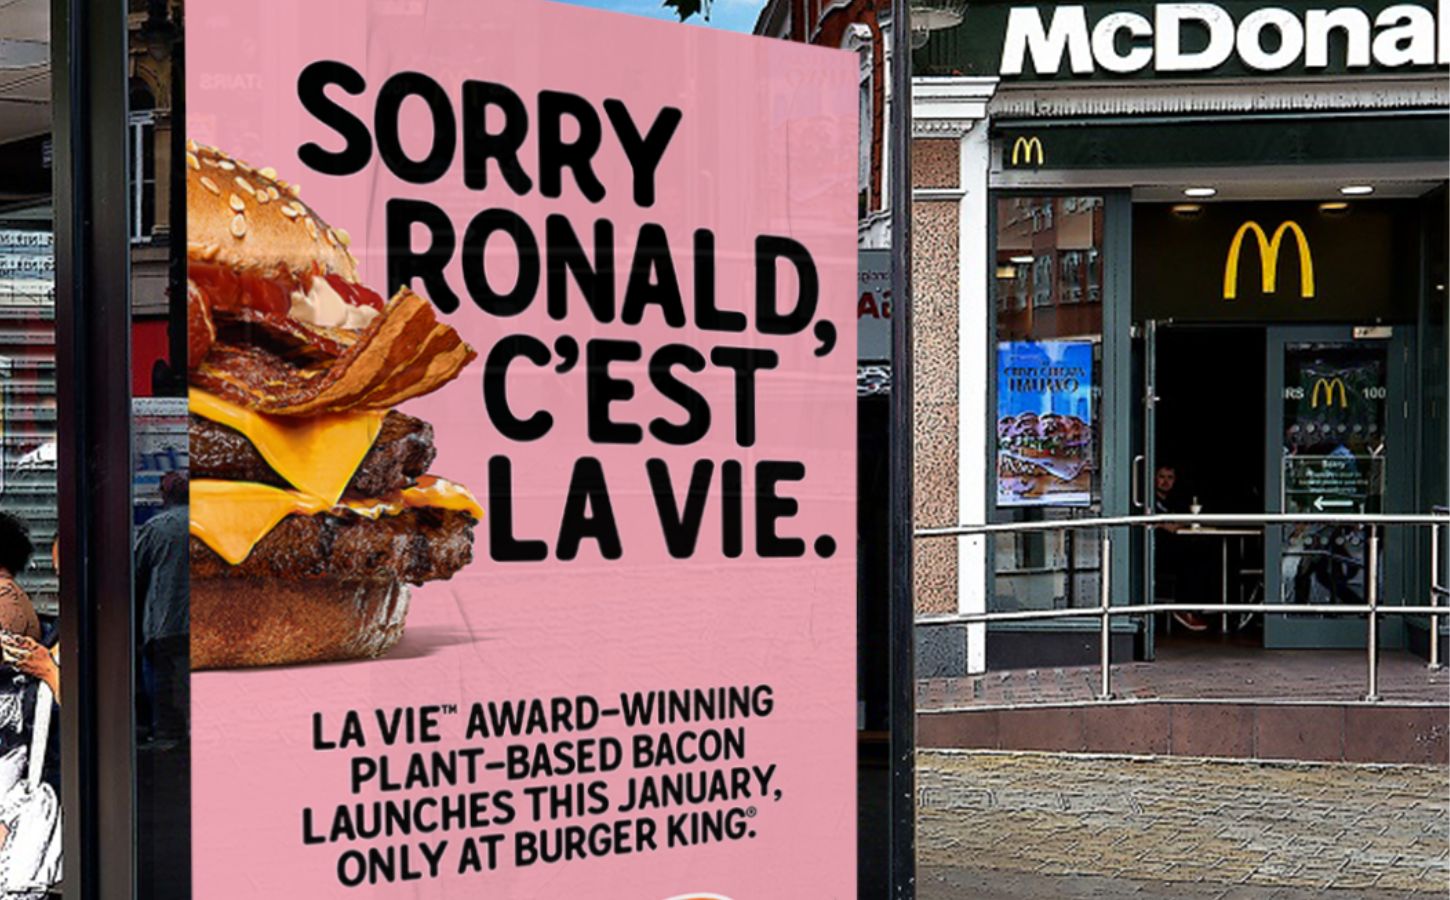 A Burger King advert for La Vie vegan bacon outside a McDonald's